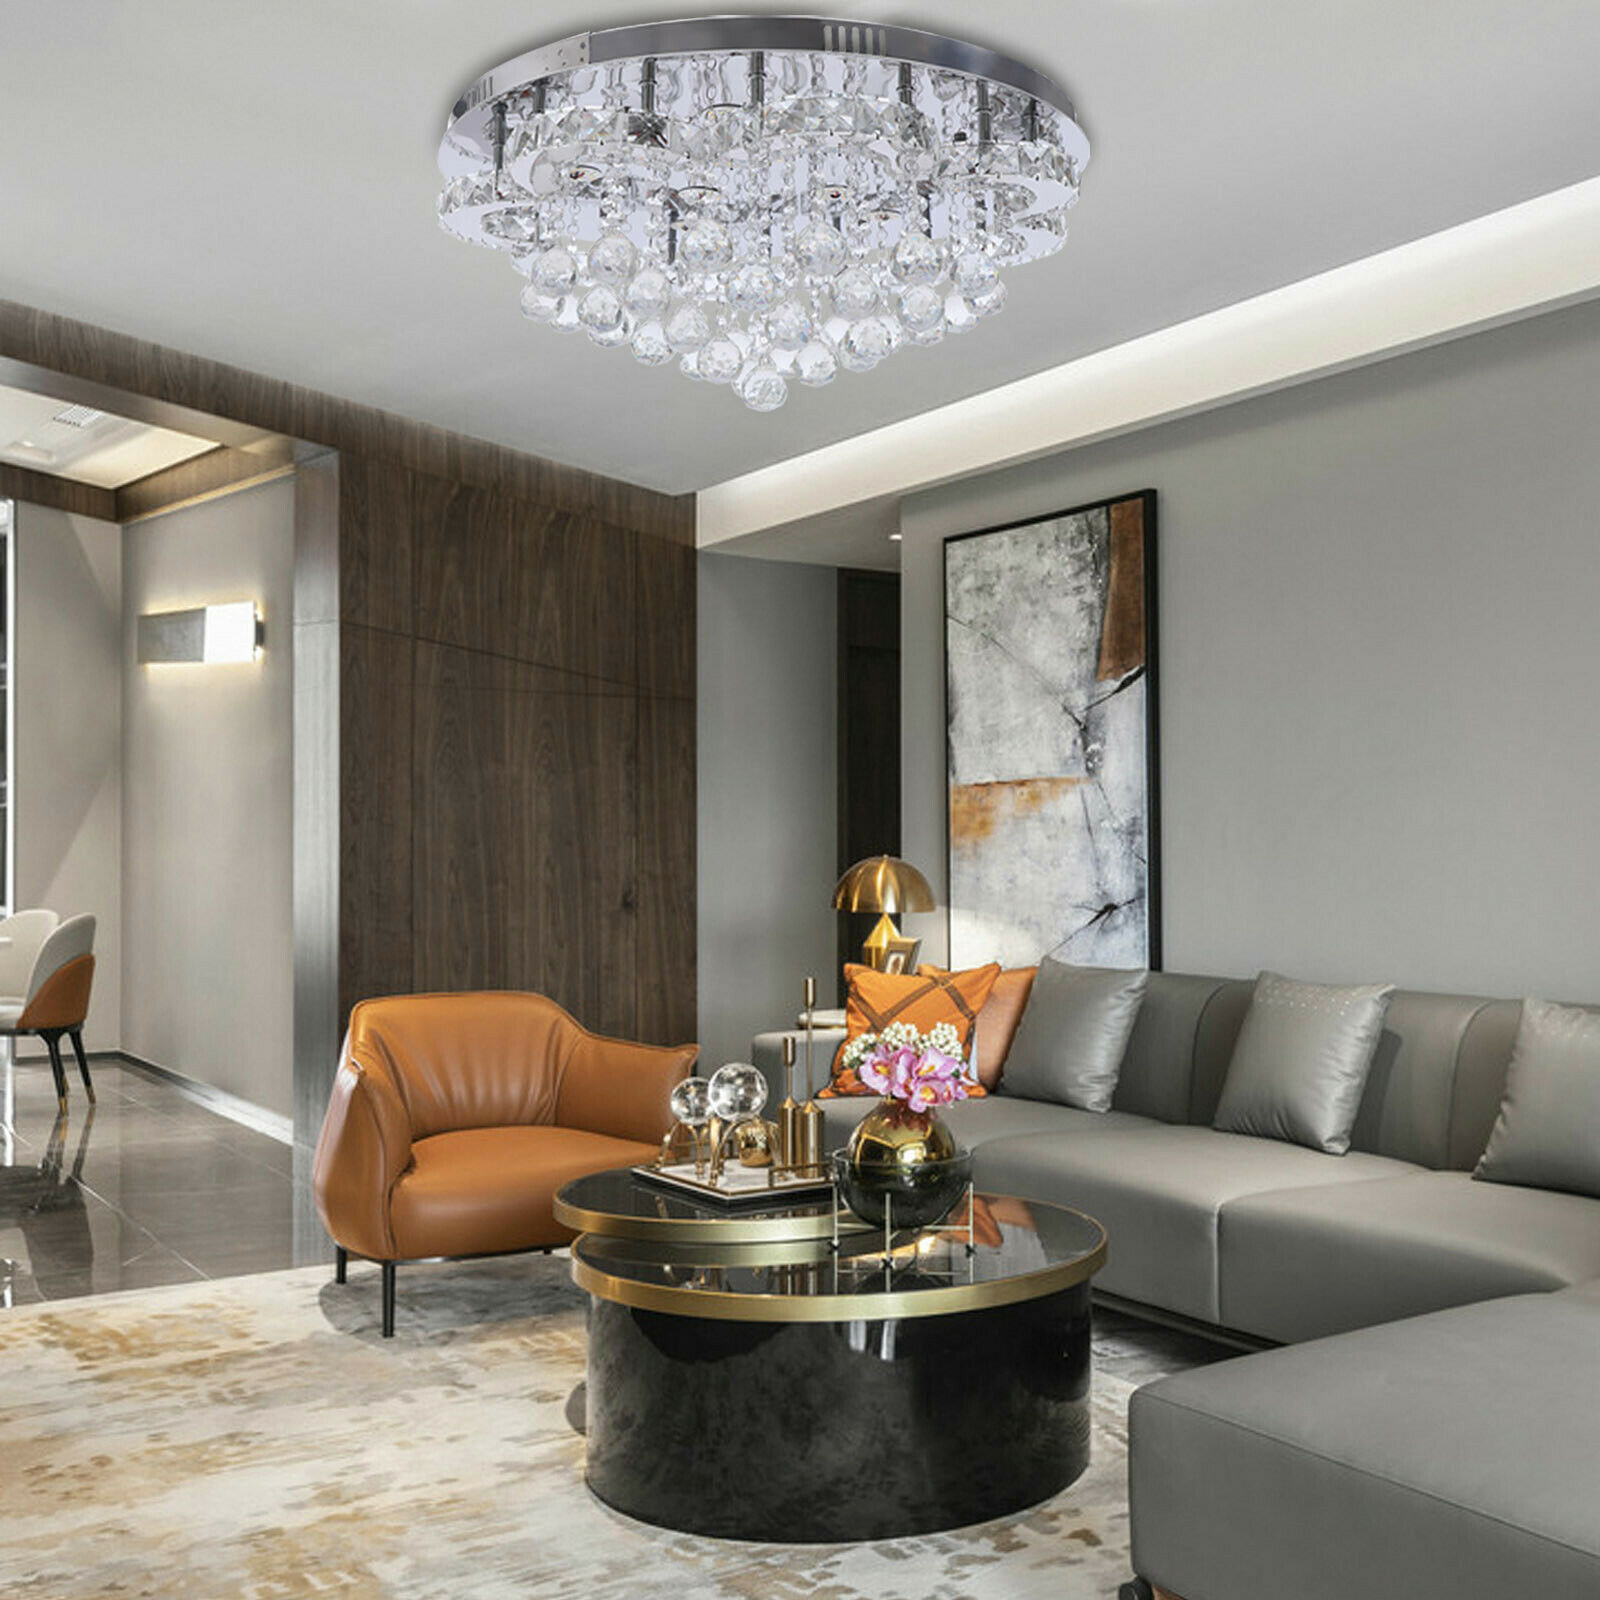 https://assets.wfcdn.com/im/23262868/compr-r85/2016/201690262/crystal-chandelier-flush-mount-ceiling-light-with-remote-for-bedroom-hallway-bar-kitchen.jpg